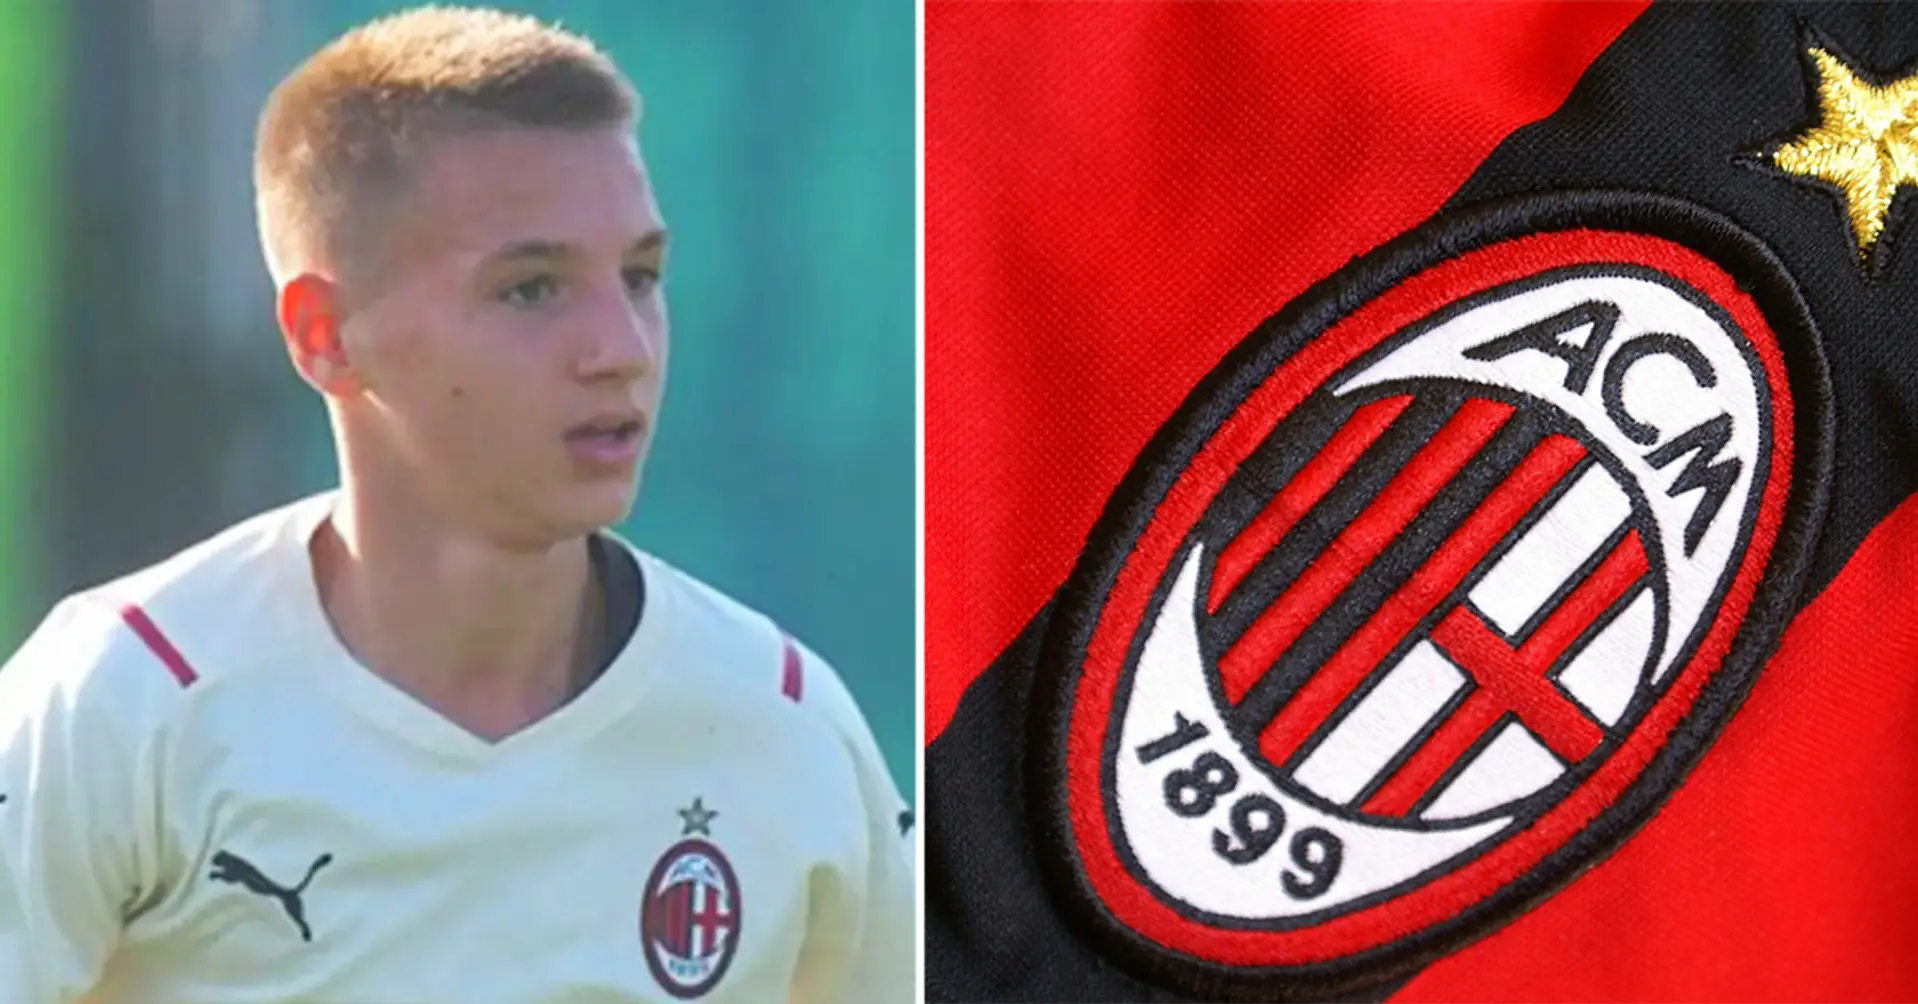 ¿El futuro del fútbol?: Un chico de 13 años lleva 483 goles en 87 partidos con el Milan